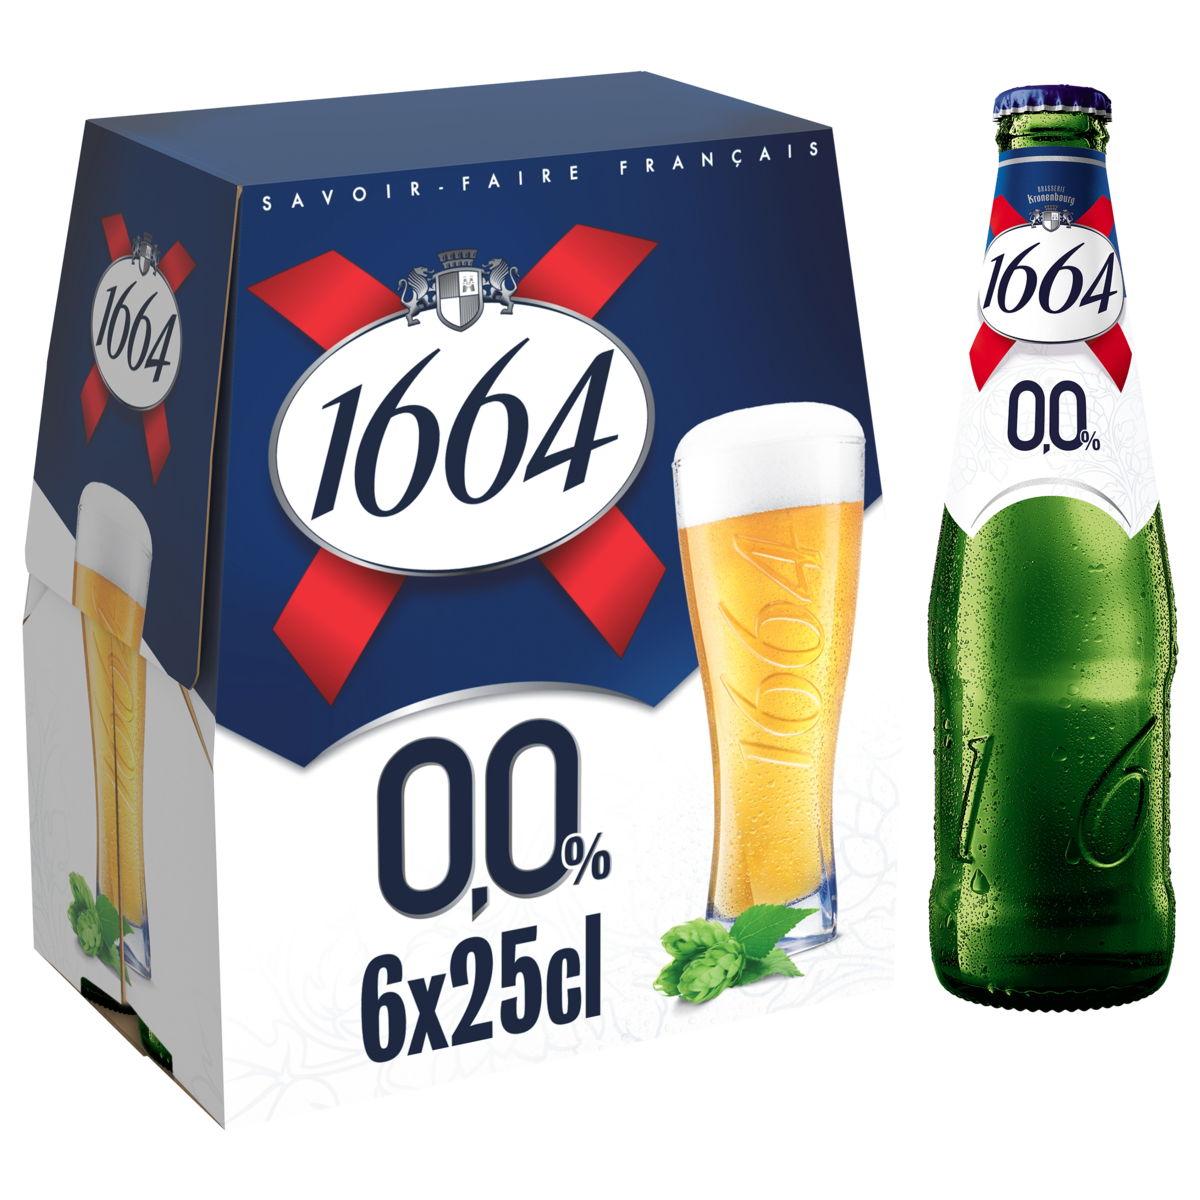 1664 Bière blonde sans alcool 0,0% bouteille 6x25cl